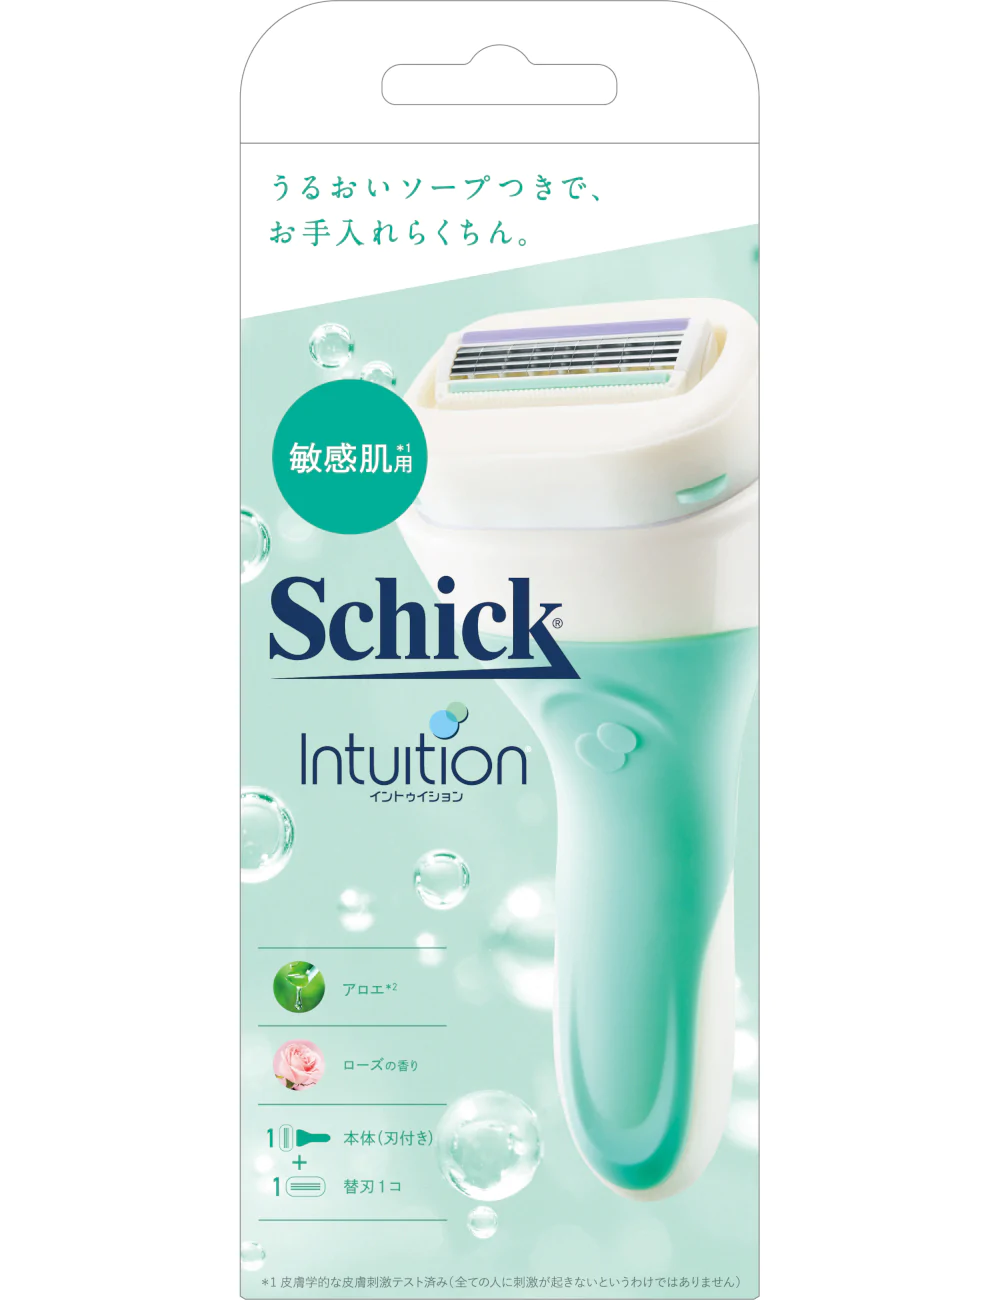 Schick(シック) イントゥイション 敏感肌用の商品画像1 